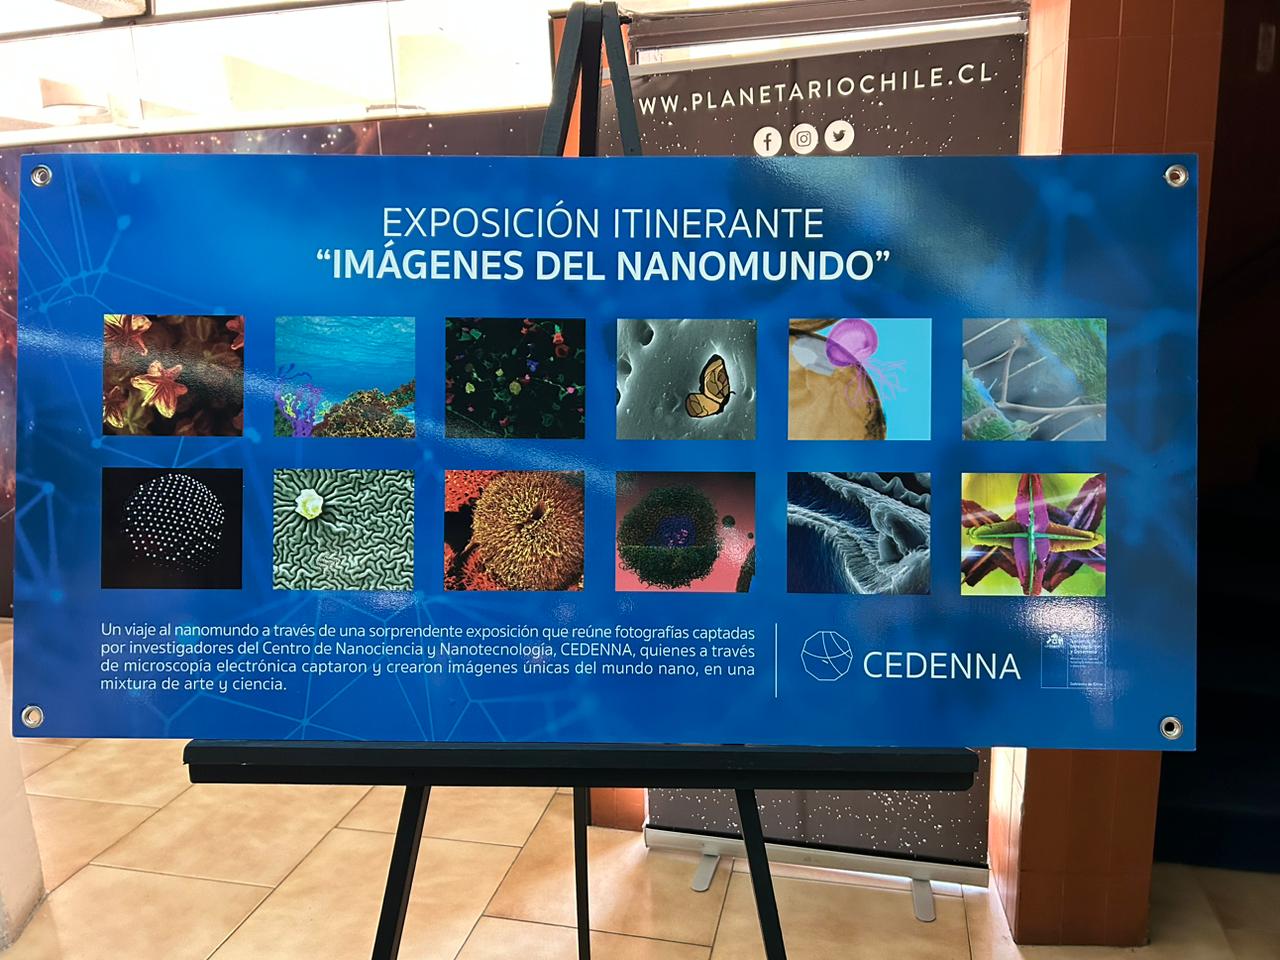 Cedenna presenta una exposición y libro gratuito sobre el nanomundo